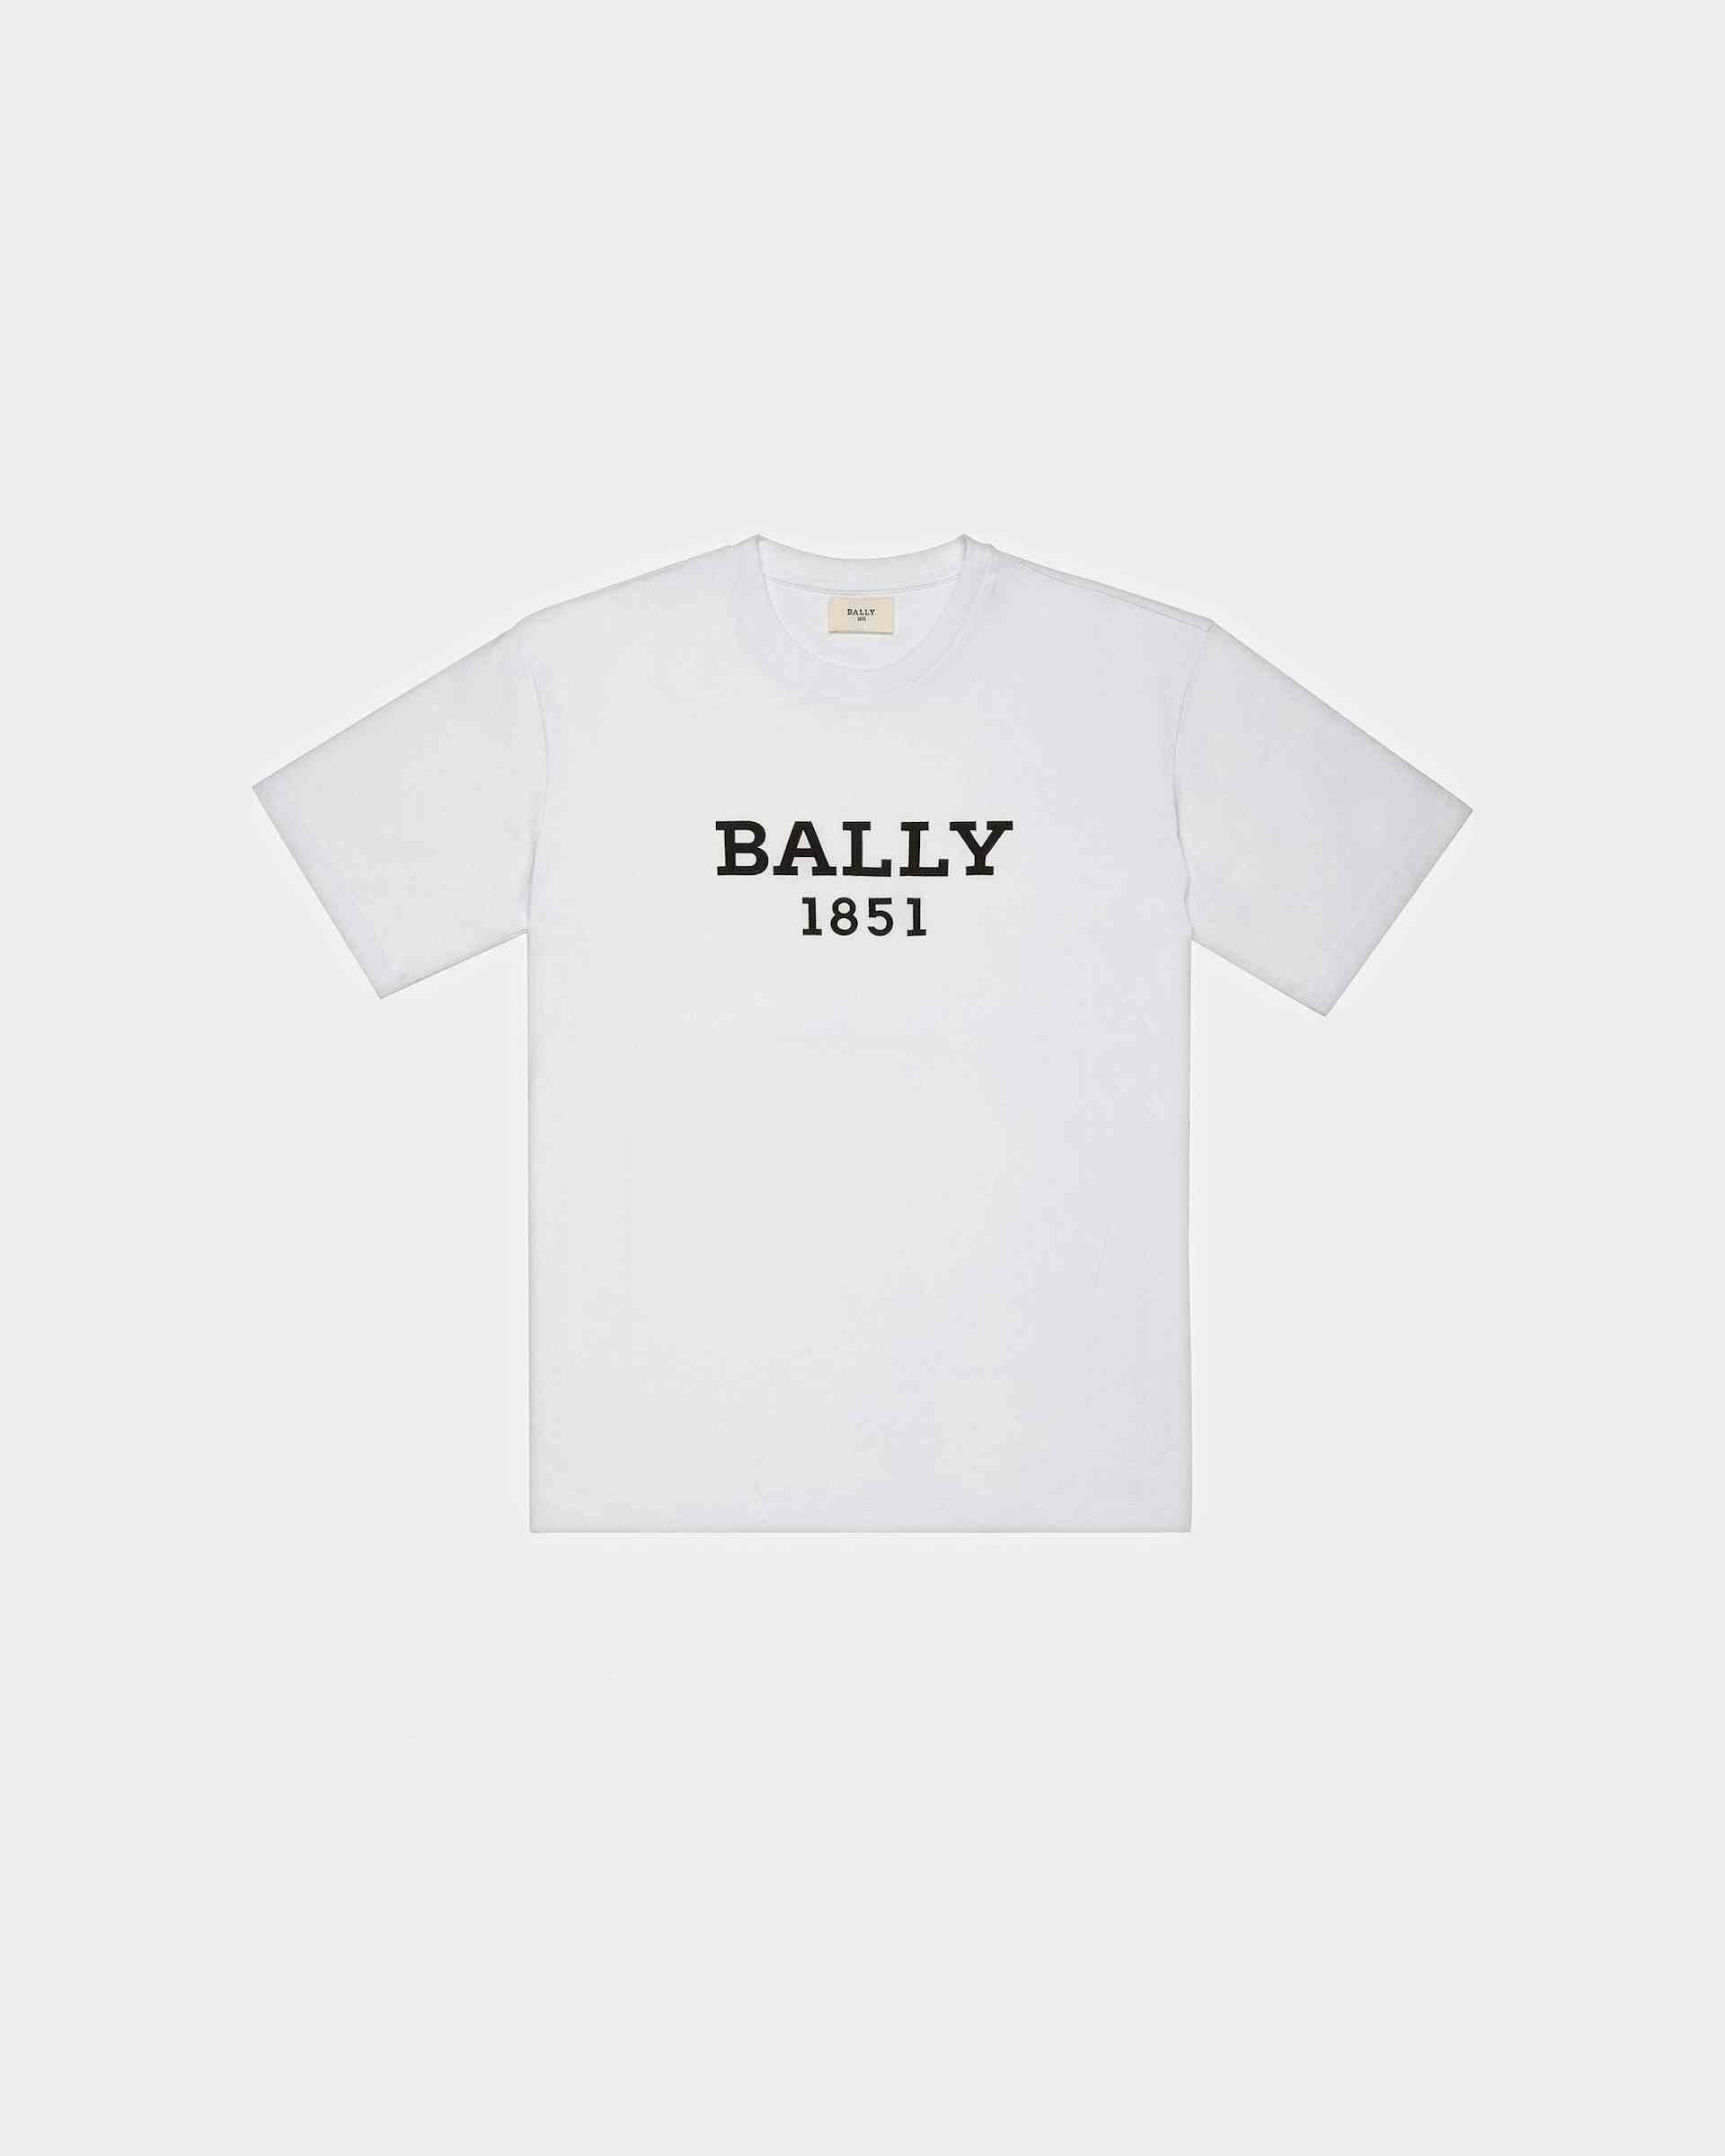 Bally 1851 T-Shirt Aus Bio-Baumwolle In Weiß - Herren - Bally